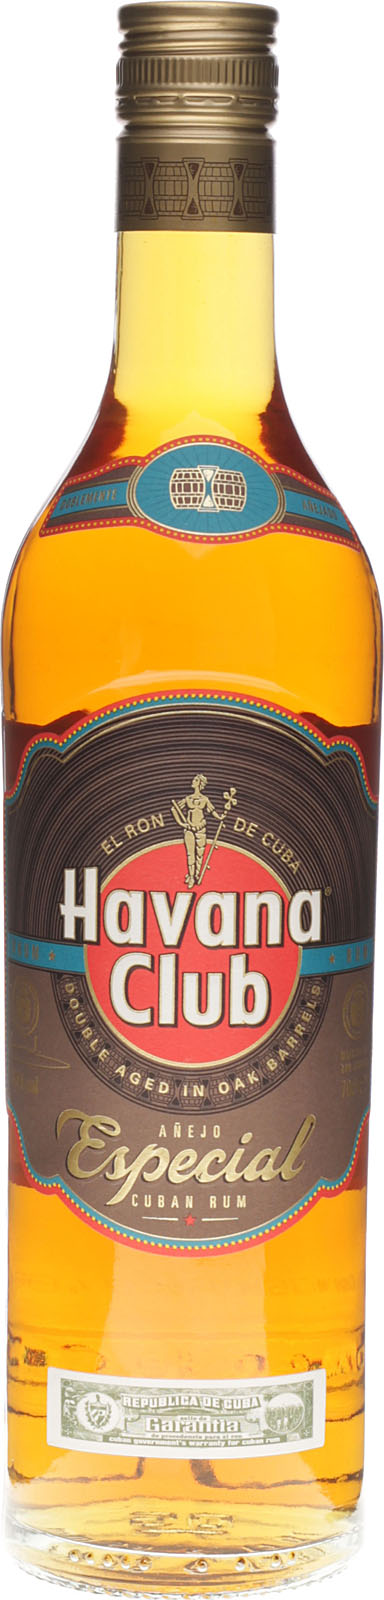 Havana Club Anejo Especial ist ein Rum aus Cuba mit 700